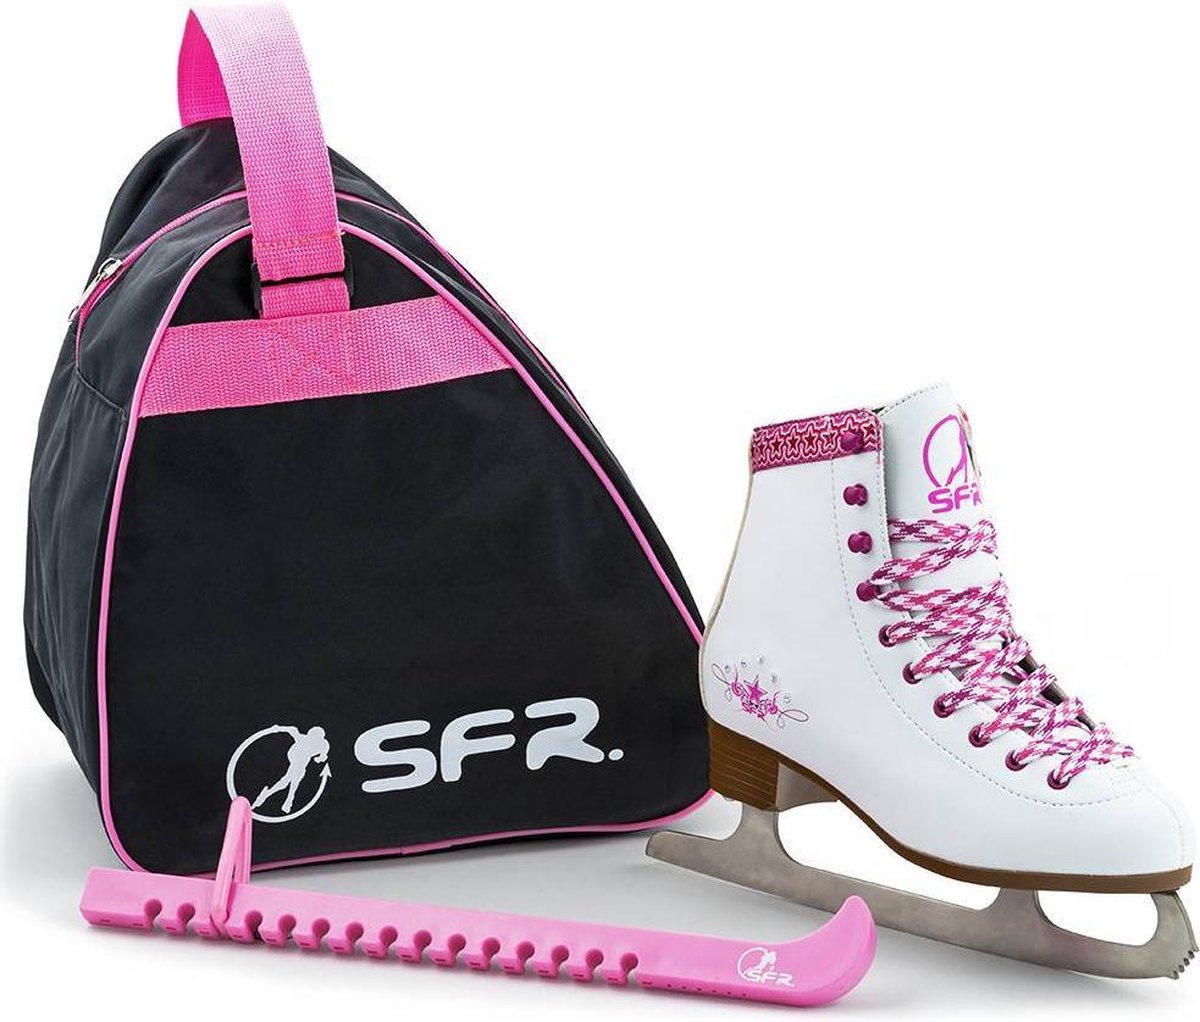 SFR Ice Skate Gift Set (Kunstschaatsen + Tas + Schaatsbeschermers) - Vegan vriendelijk - Maat 32